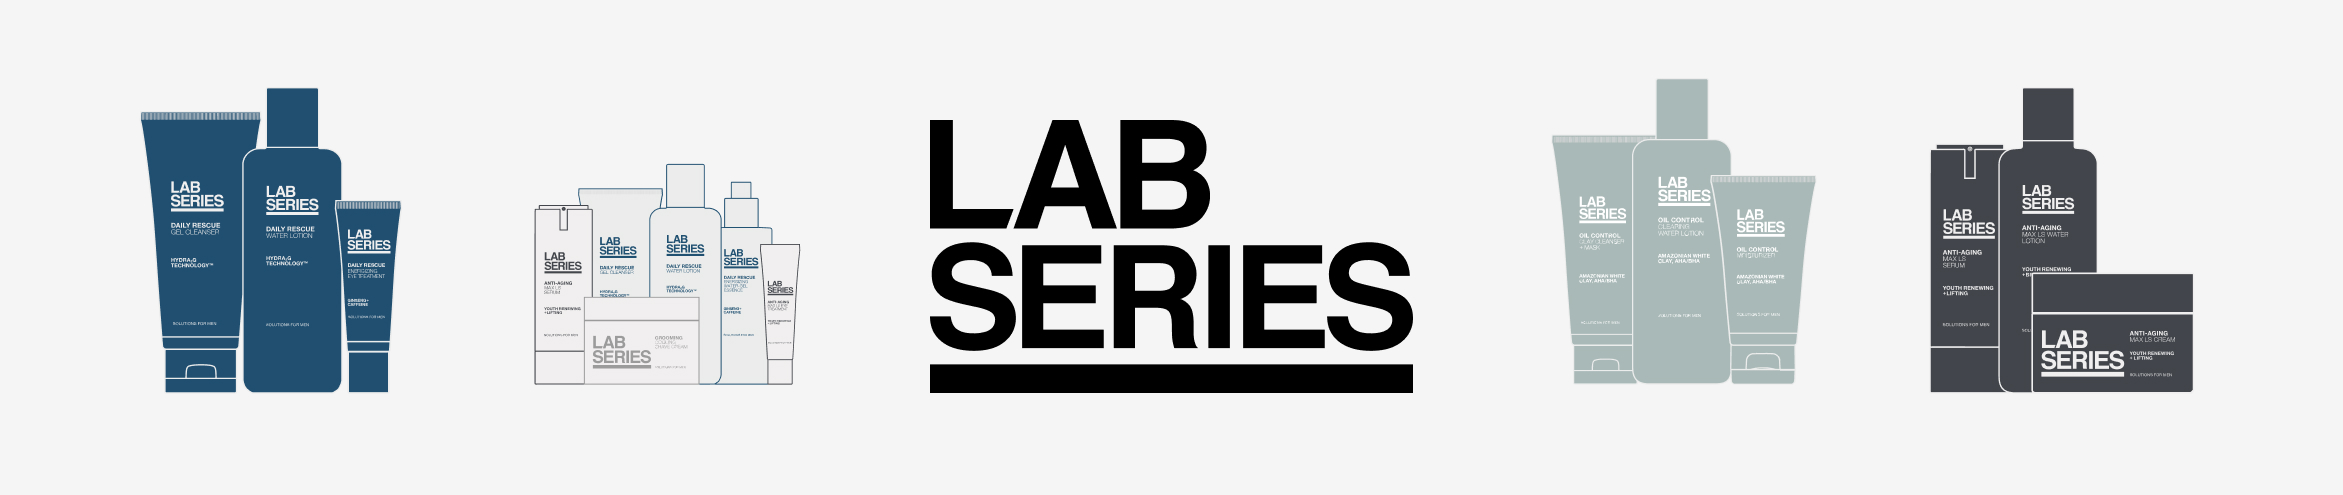 Lab Series - Shaving & Grooming